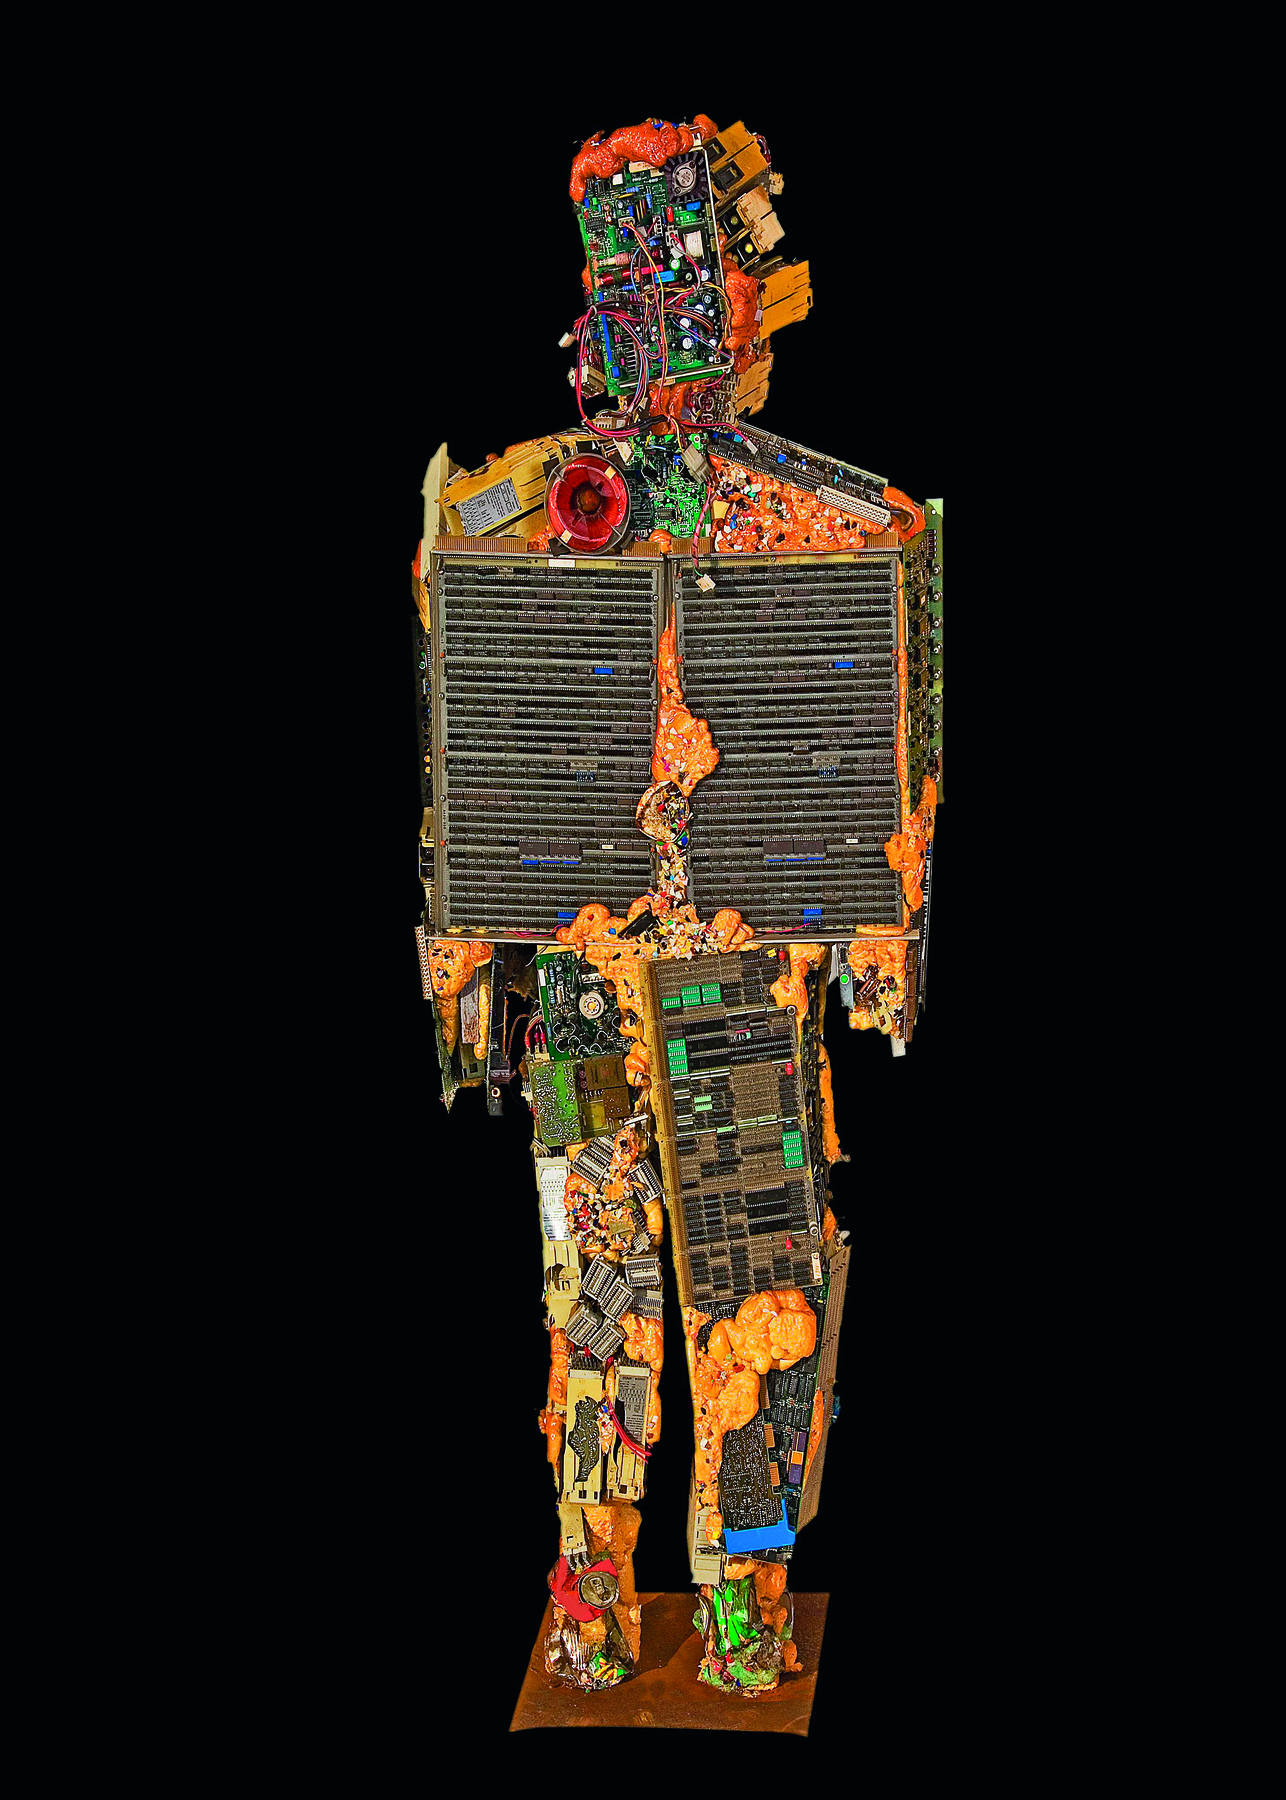 Fotografia. Escultura feita com lixo cujo formato lembra uma pessoa. Há diversos tipos de objetos, entre eles, restos de placas de computador e transistores.